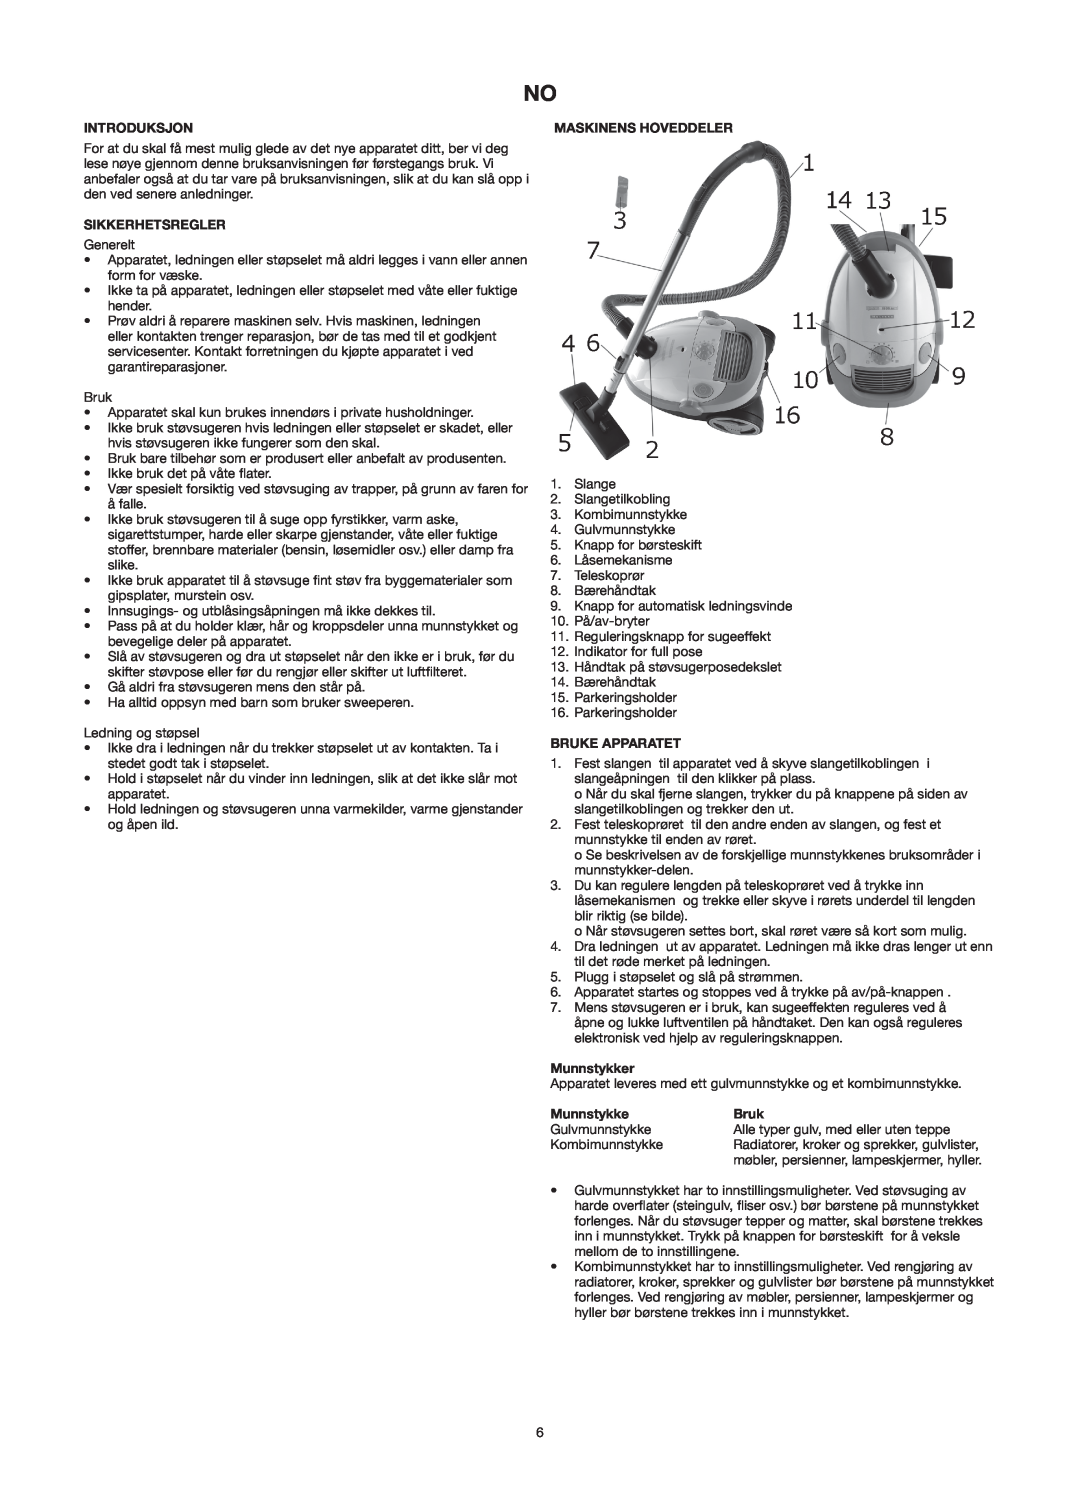 Melissa 640-141 manual Introduksjon, Sikkerhetsregler, Maskinens Hoveddeler, Bruke Apparatet, Munnstykker 